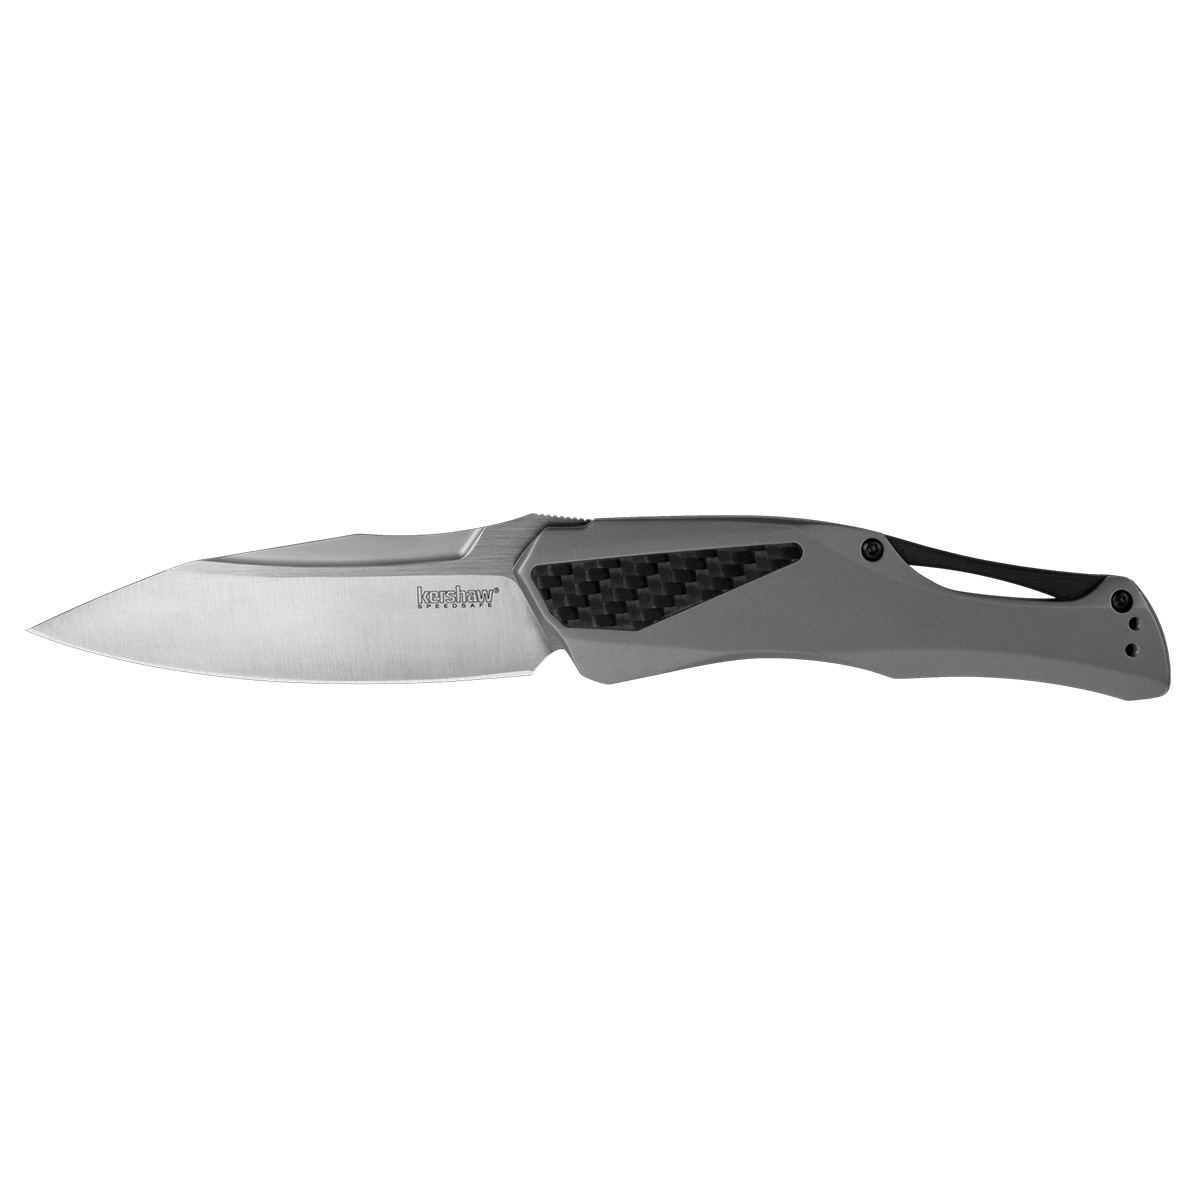 Полуавтоматический складной нож Kershaw Collateral, сталь D2, рукоять нержавеющая сталь